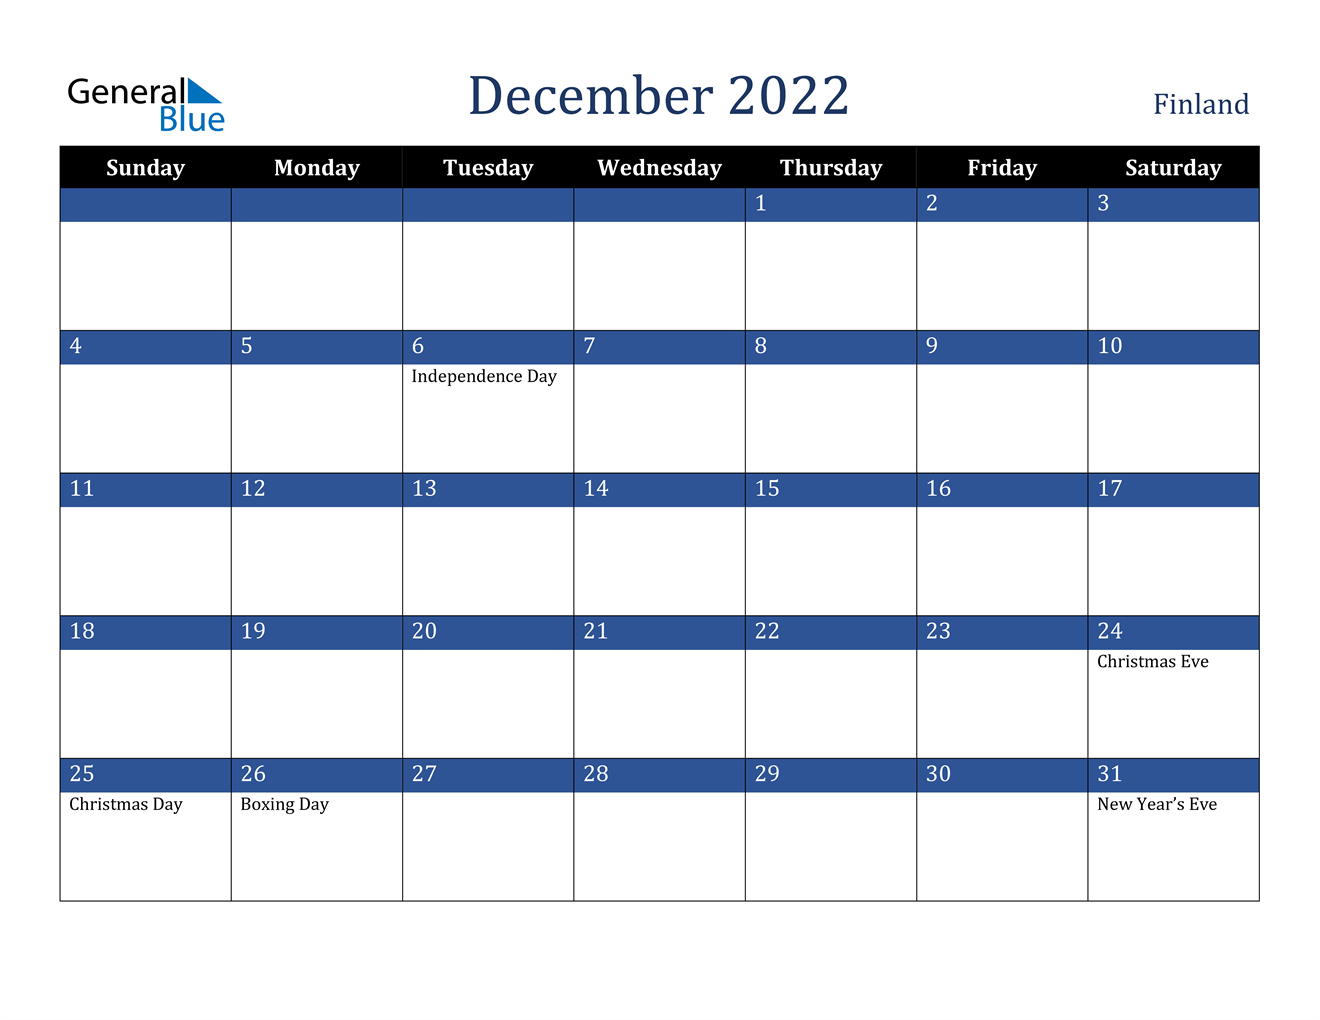 December 2022 Calendar Finland